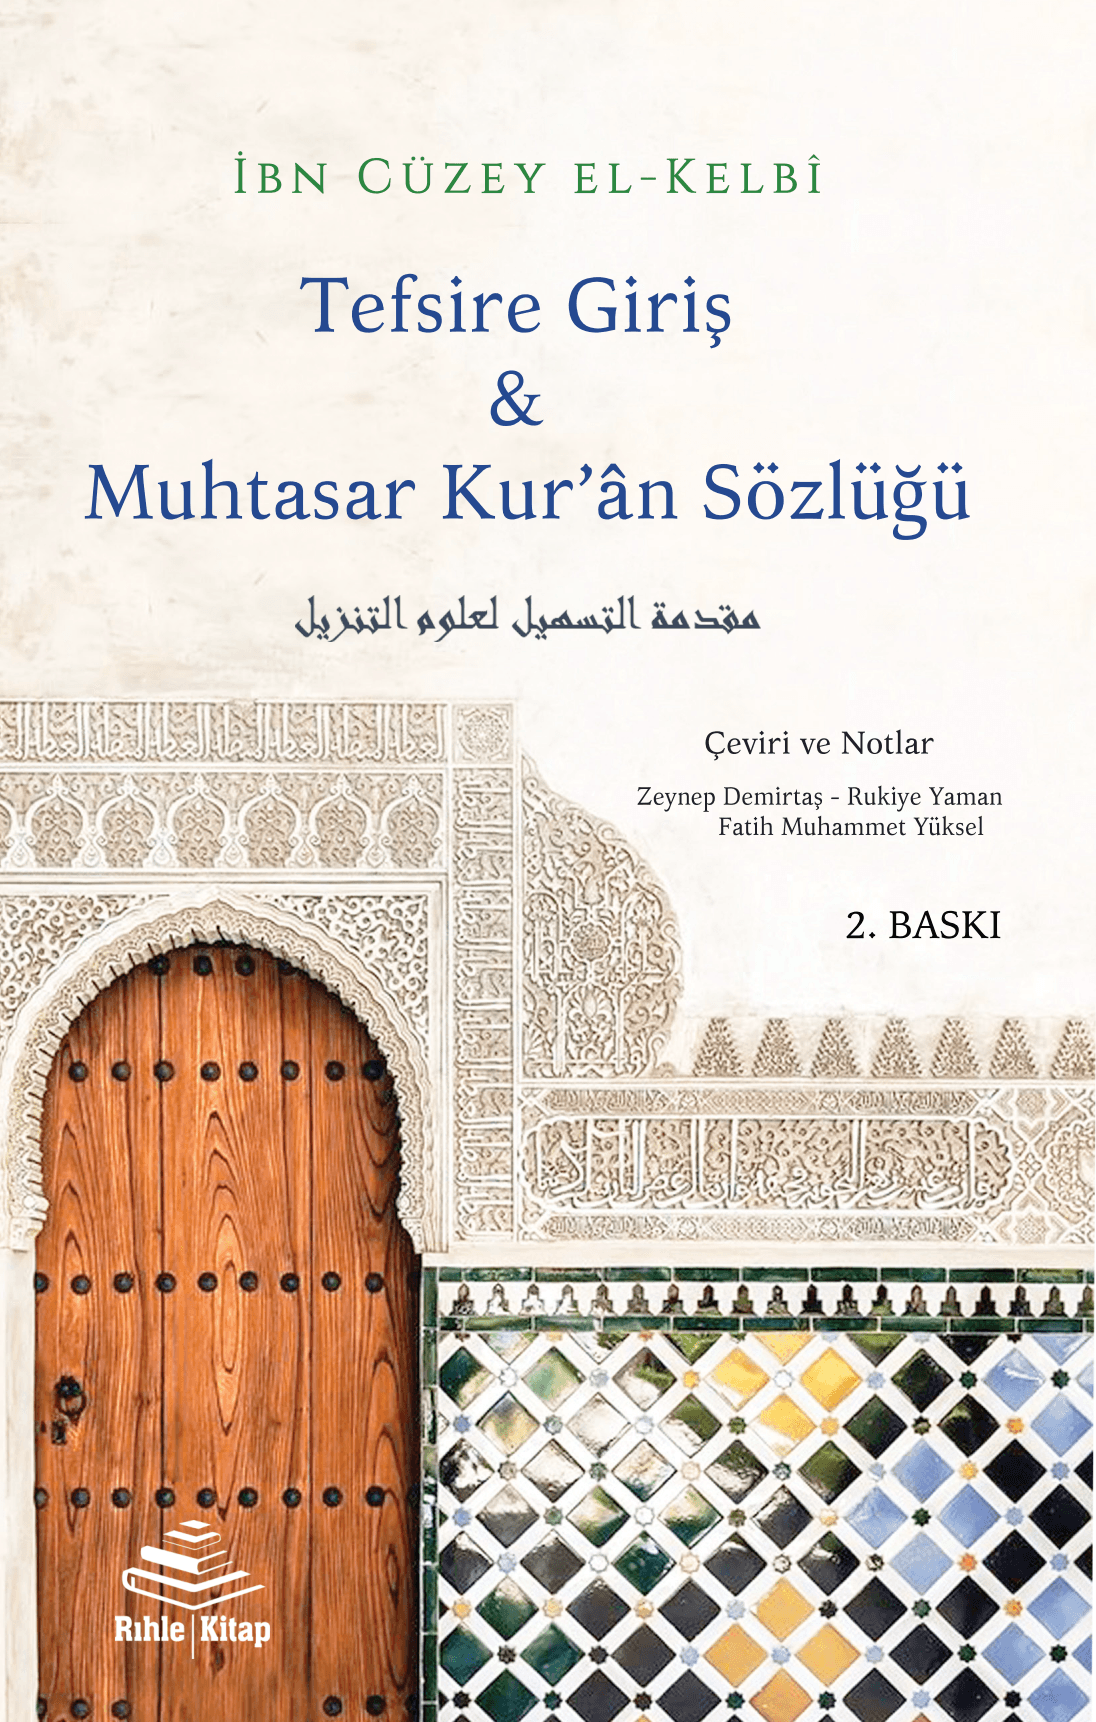 Tefsire Giriş & Muhtasar Kur'ân Sözlüğü